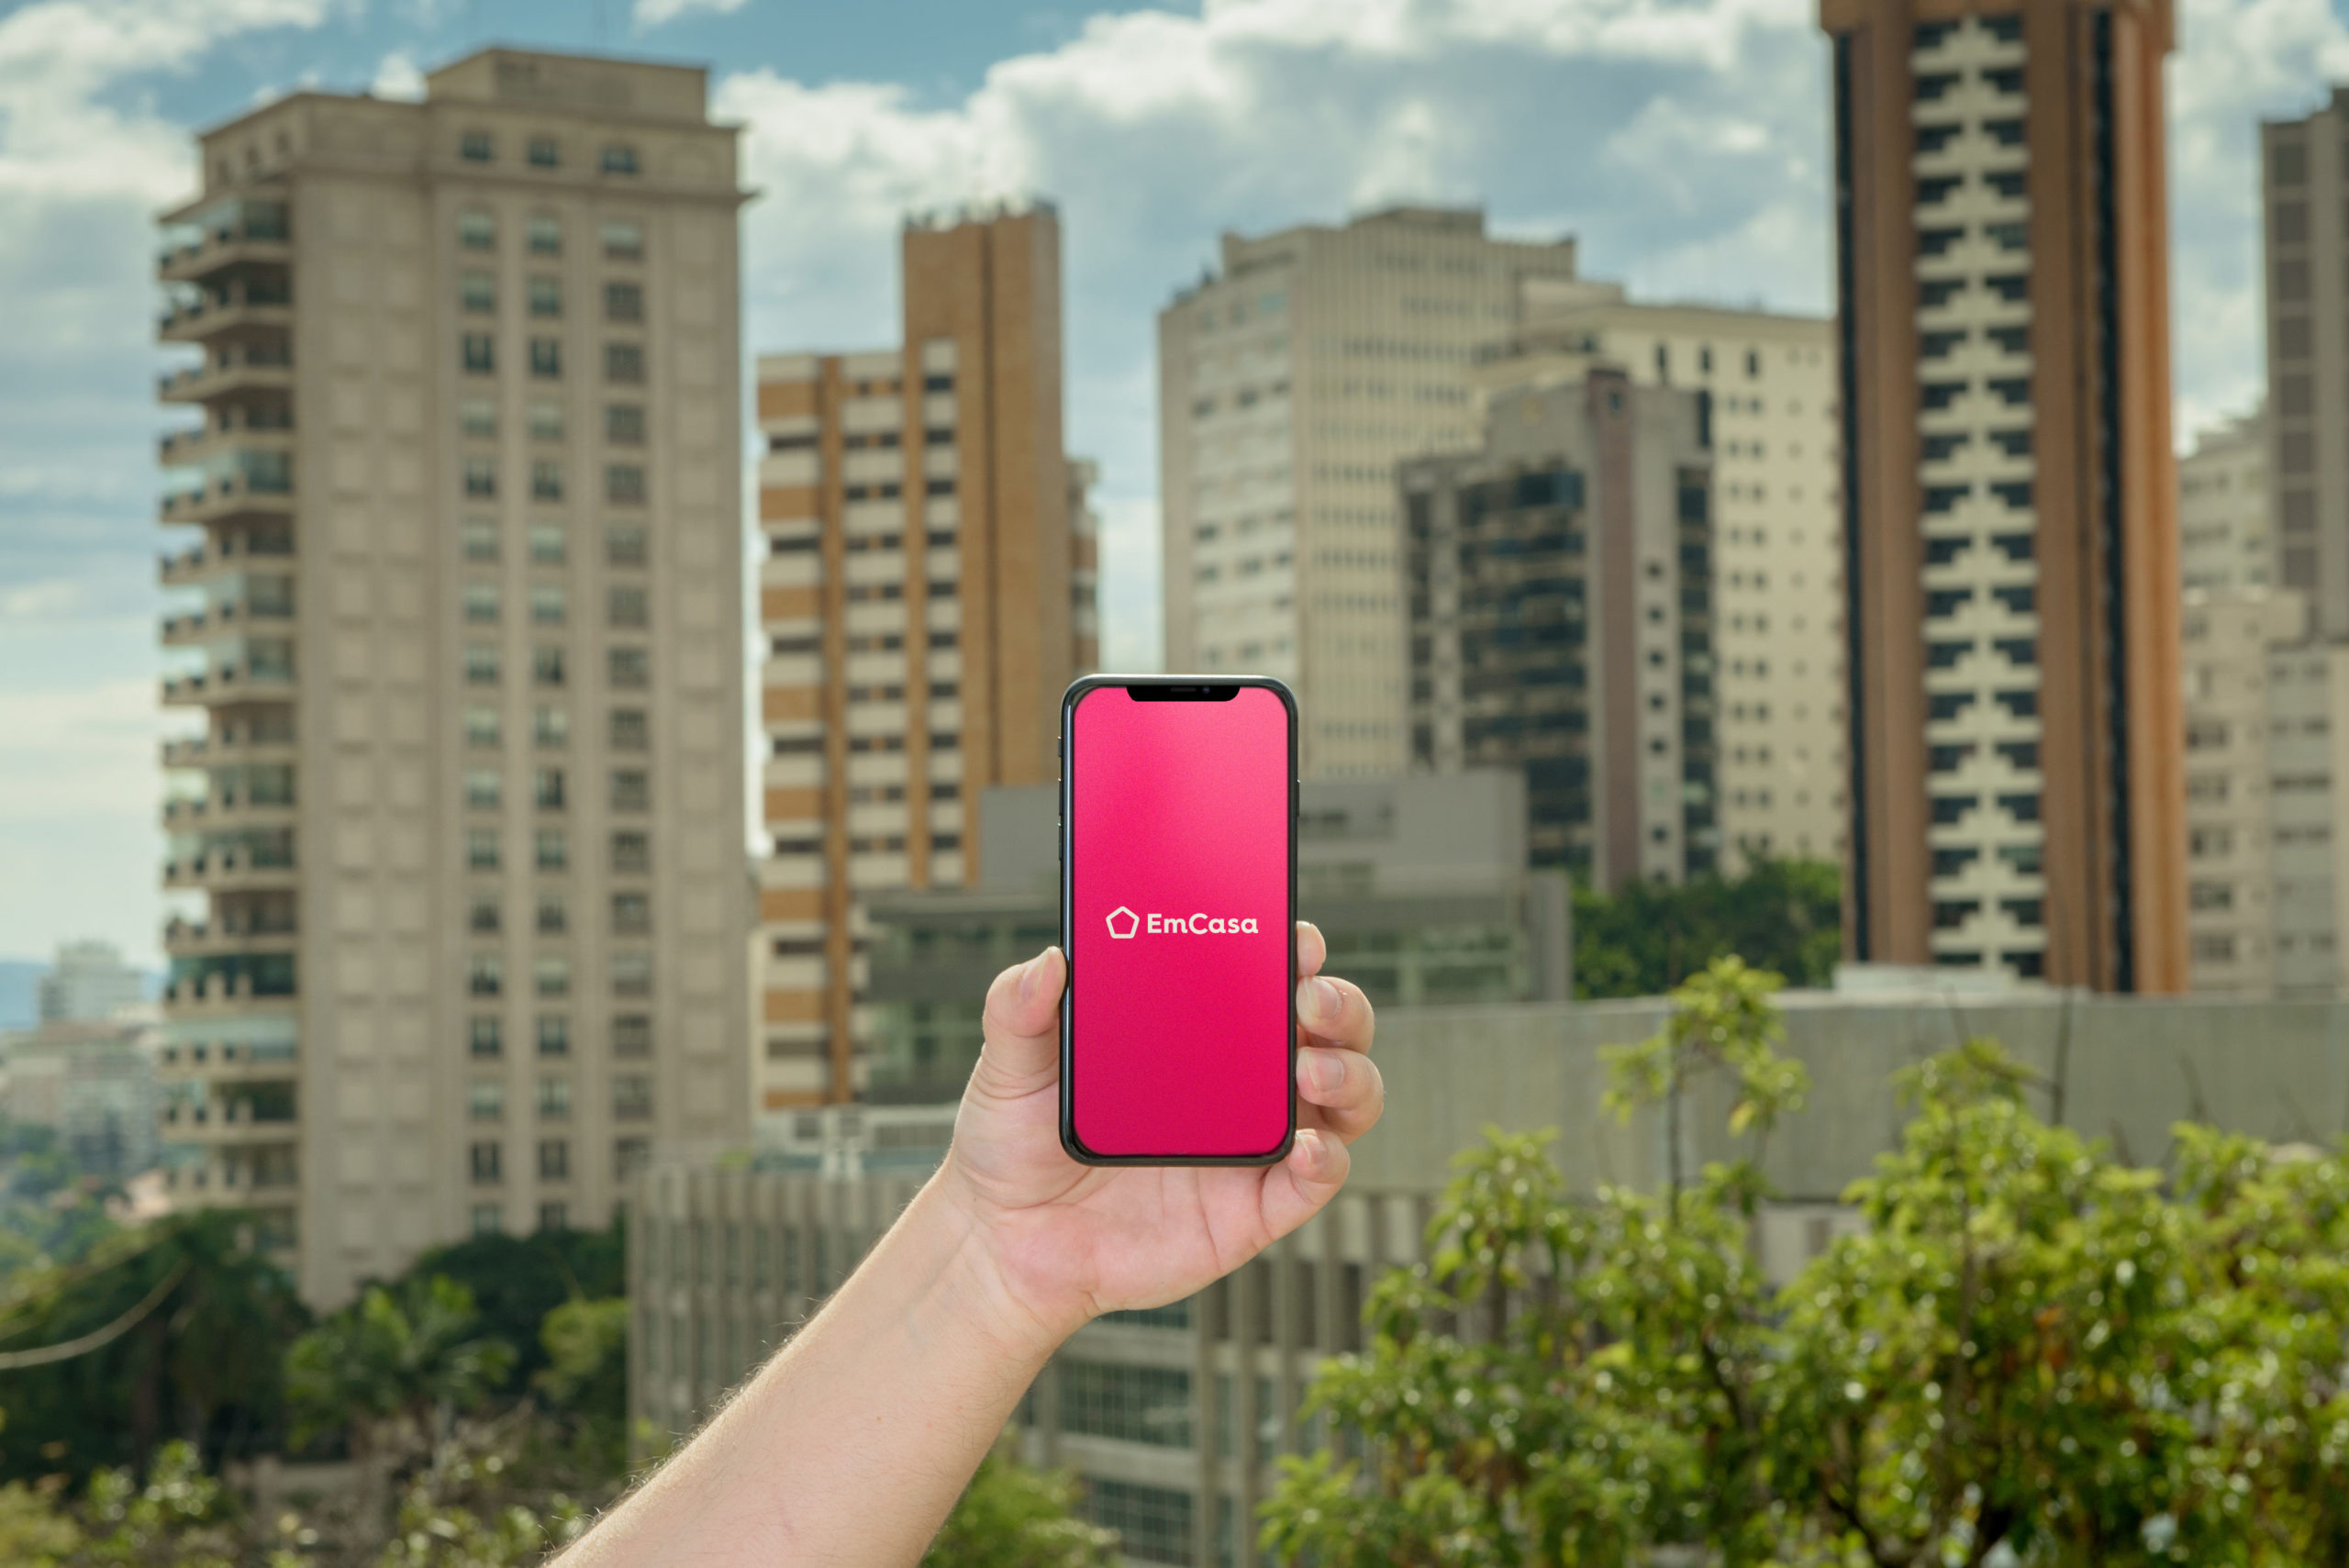 A imagem mostra uma pessoa segurando um celular com o logo da EmCasa, em um fundo cheio de prédios